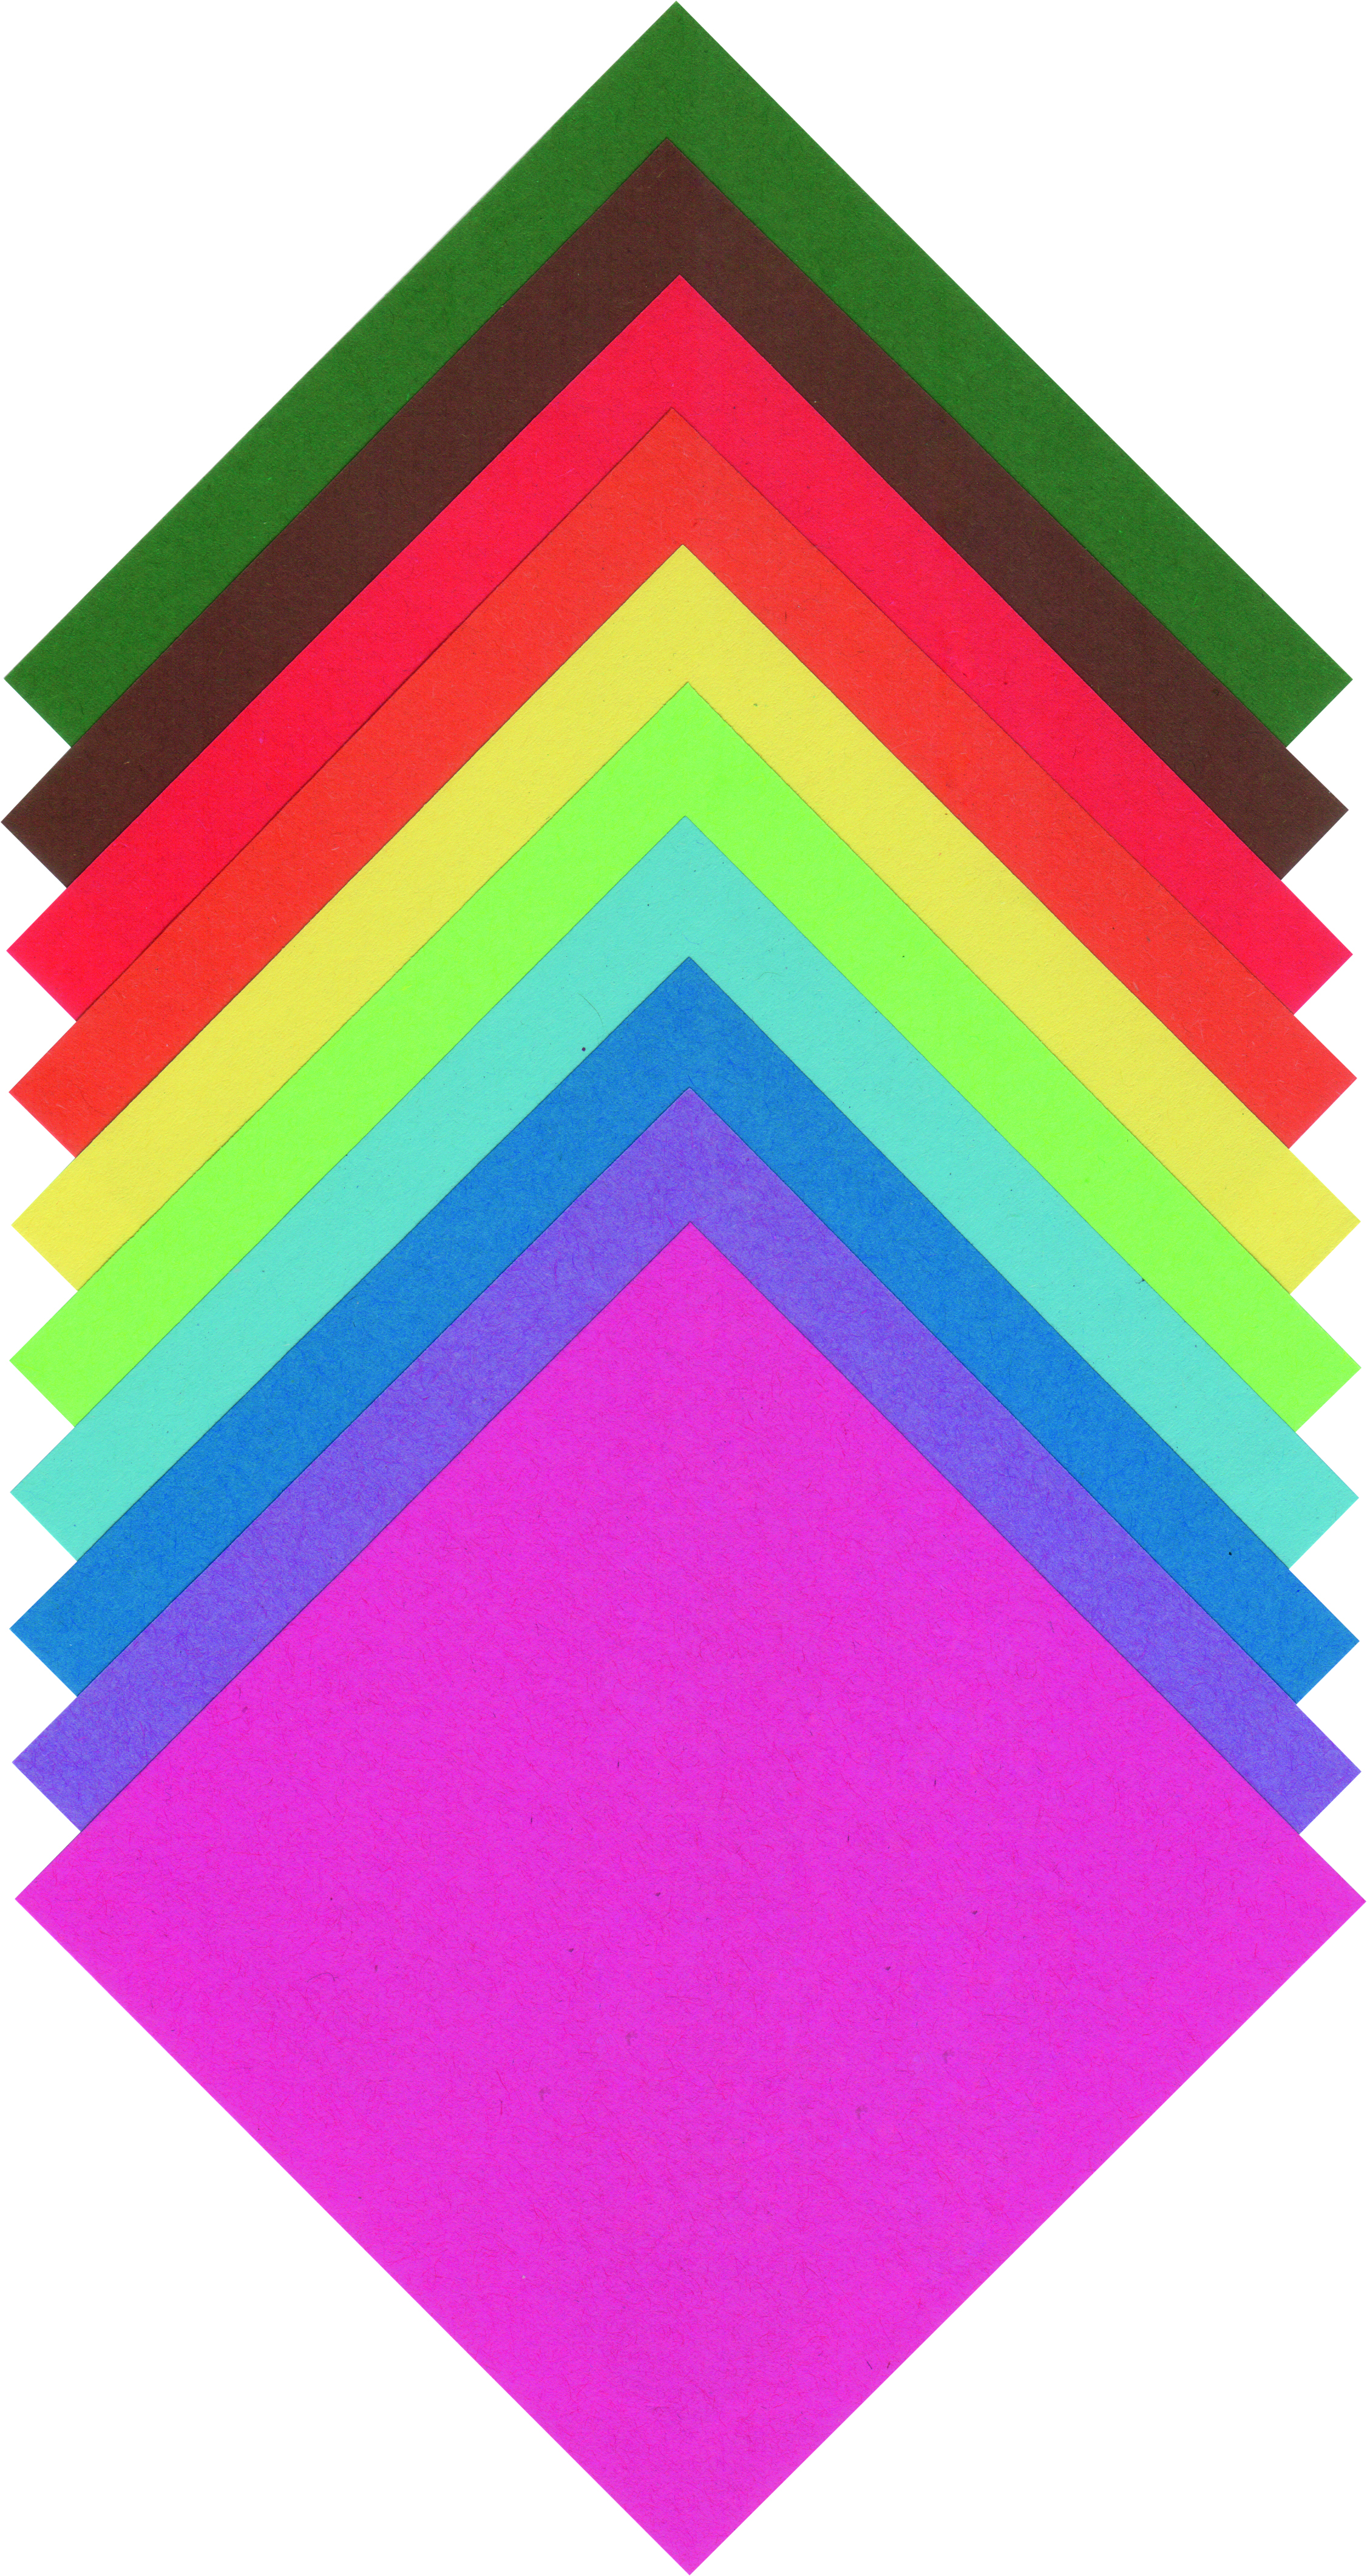 Origami papír - 20 x 20 cm - 100 archů v 10 barvách